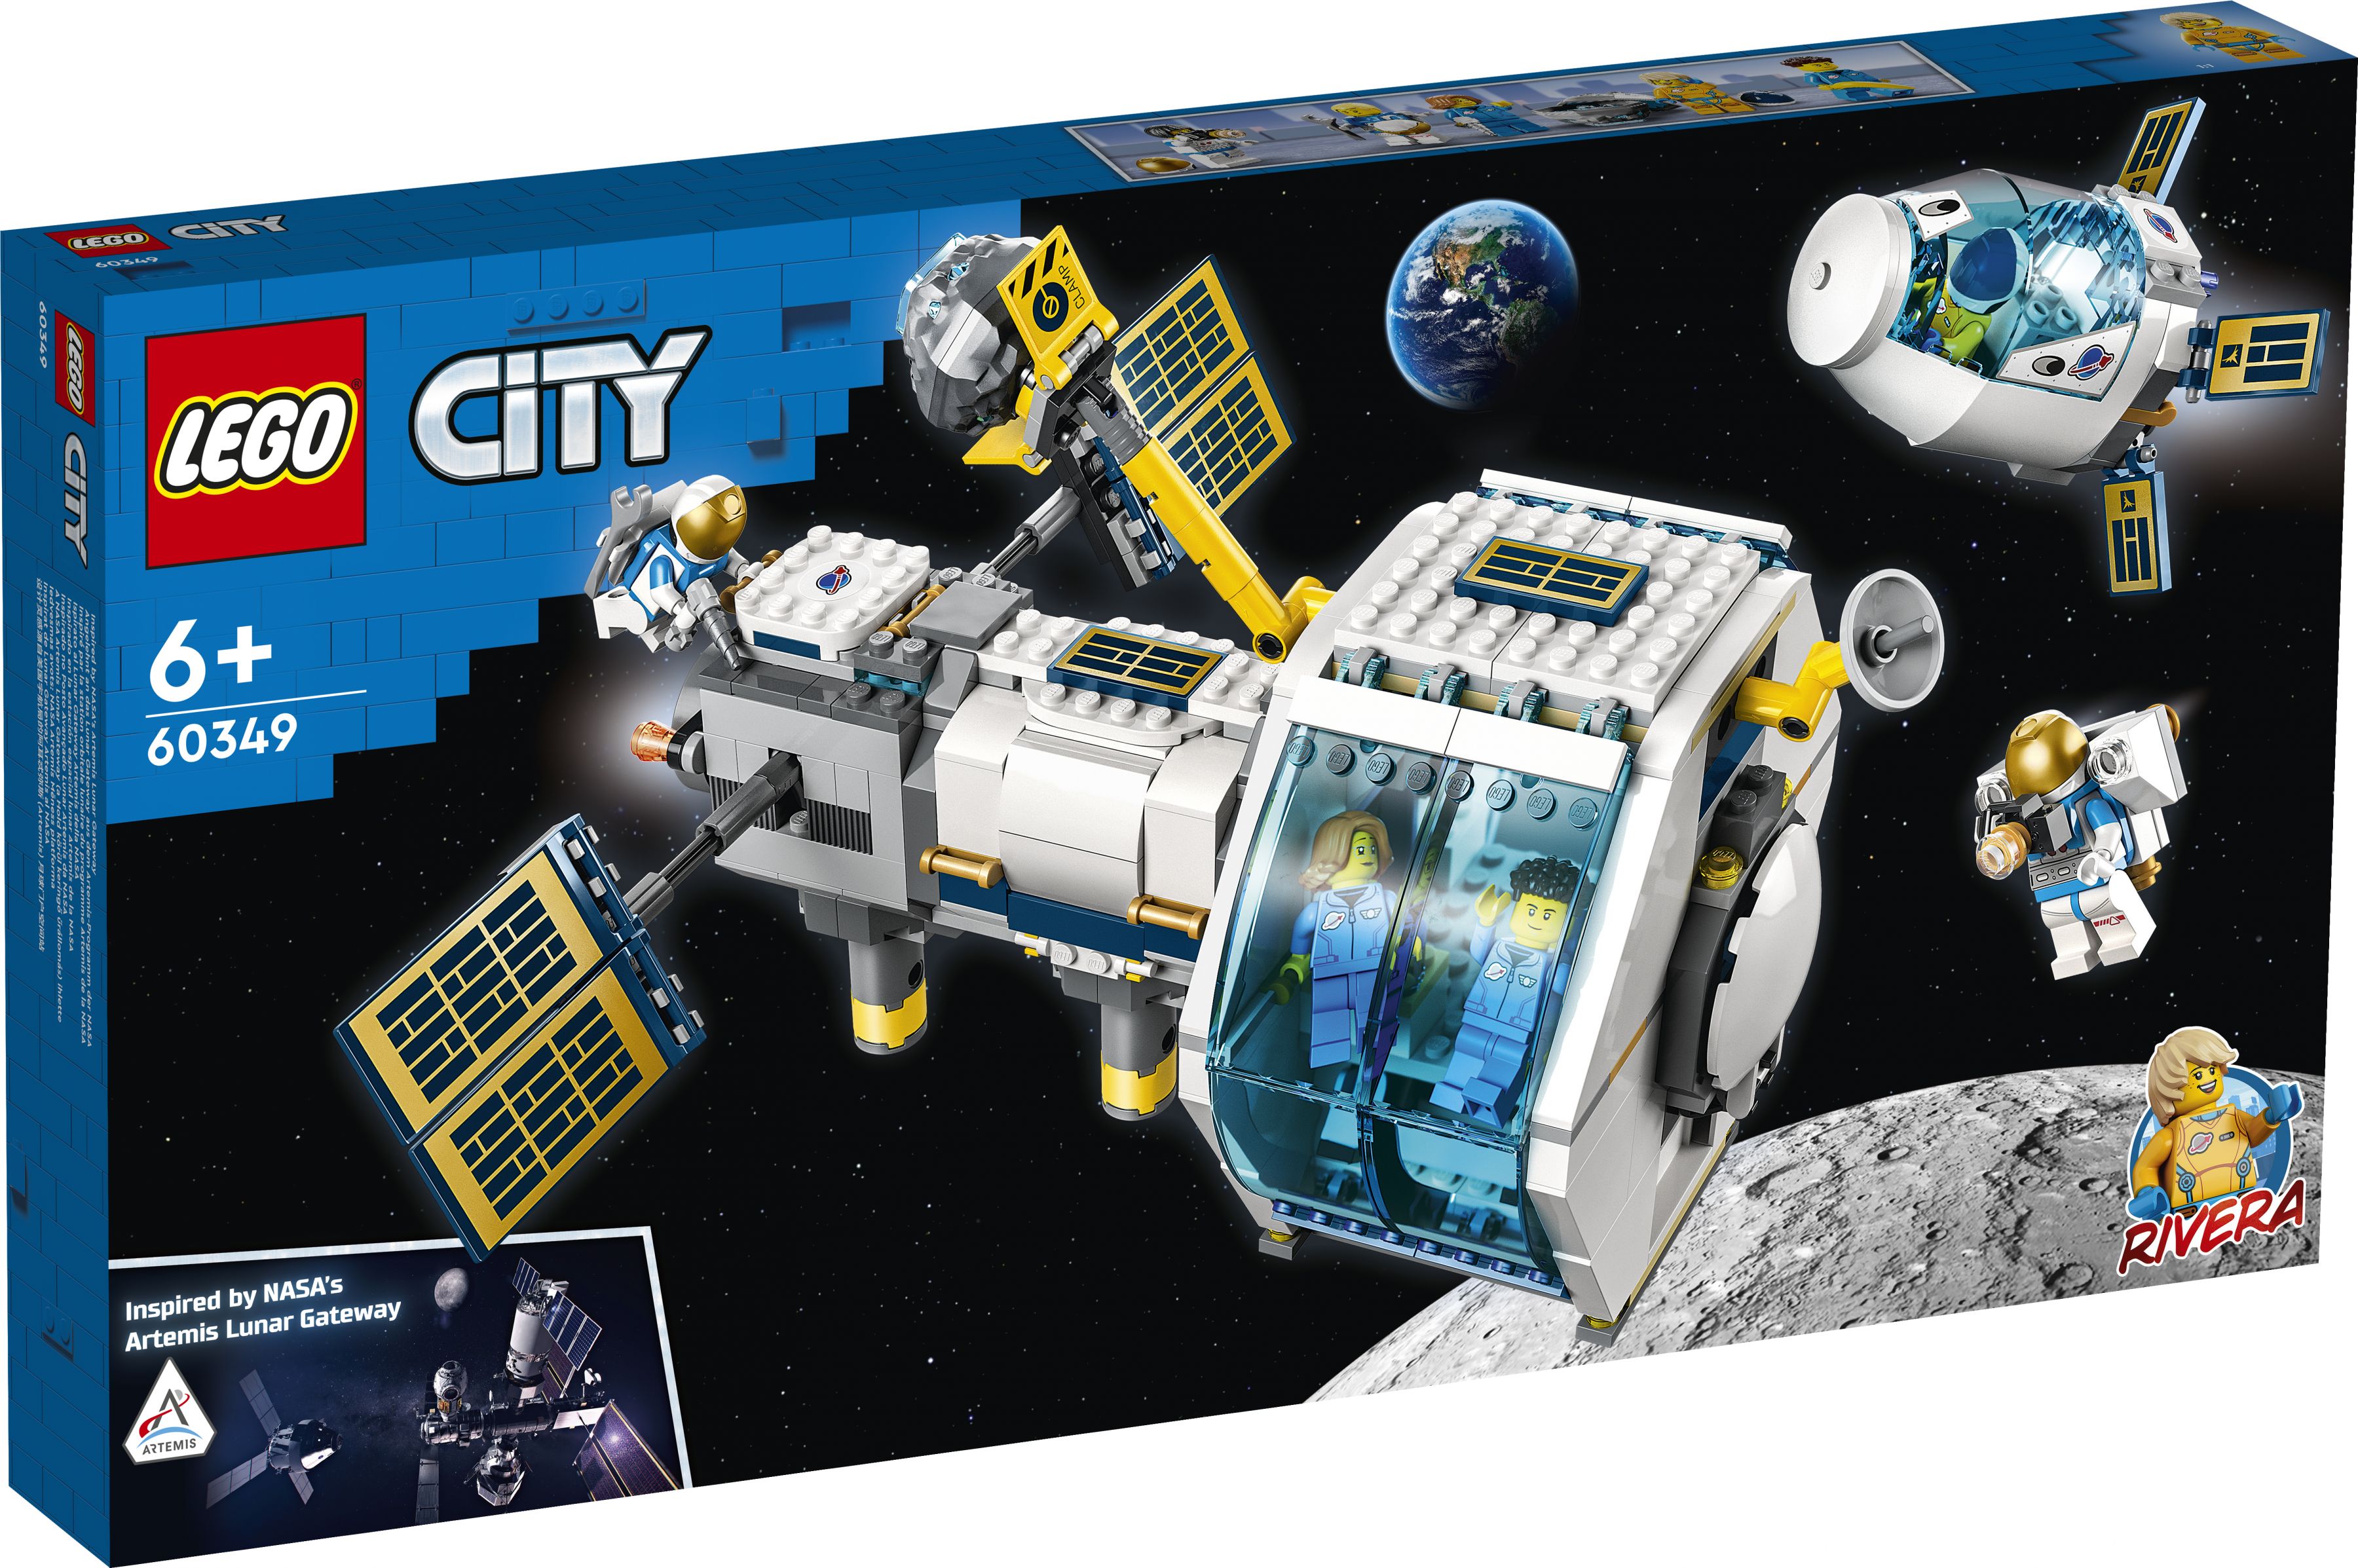 LEGO City 60349 Mond-Raumstation LEGO_60349_Box1_v29.jpg